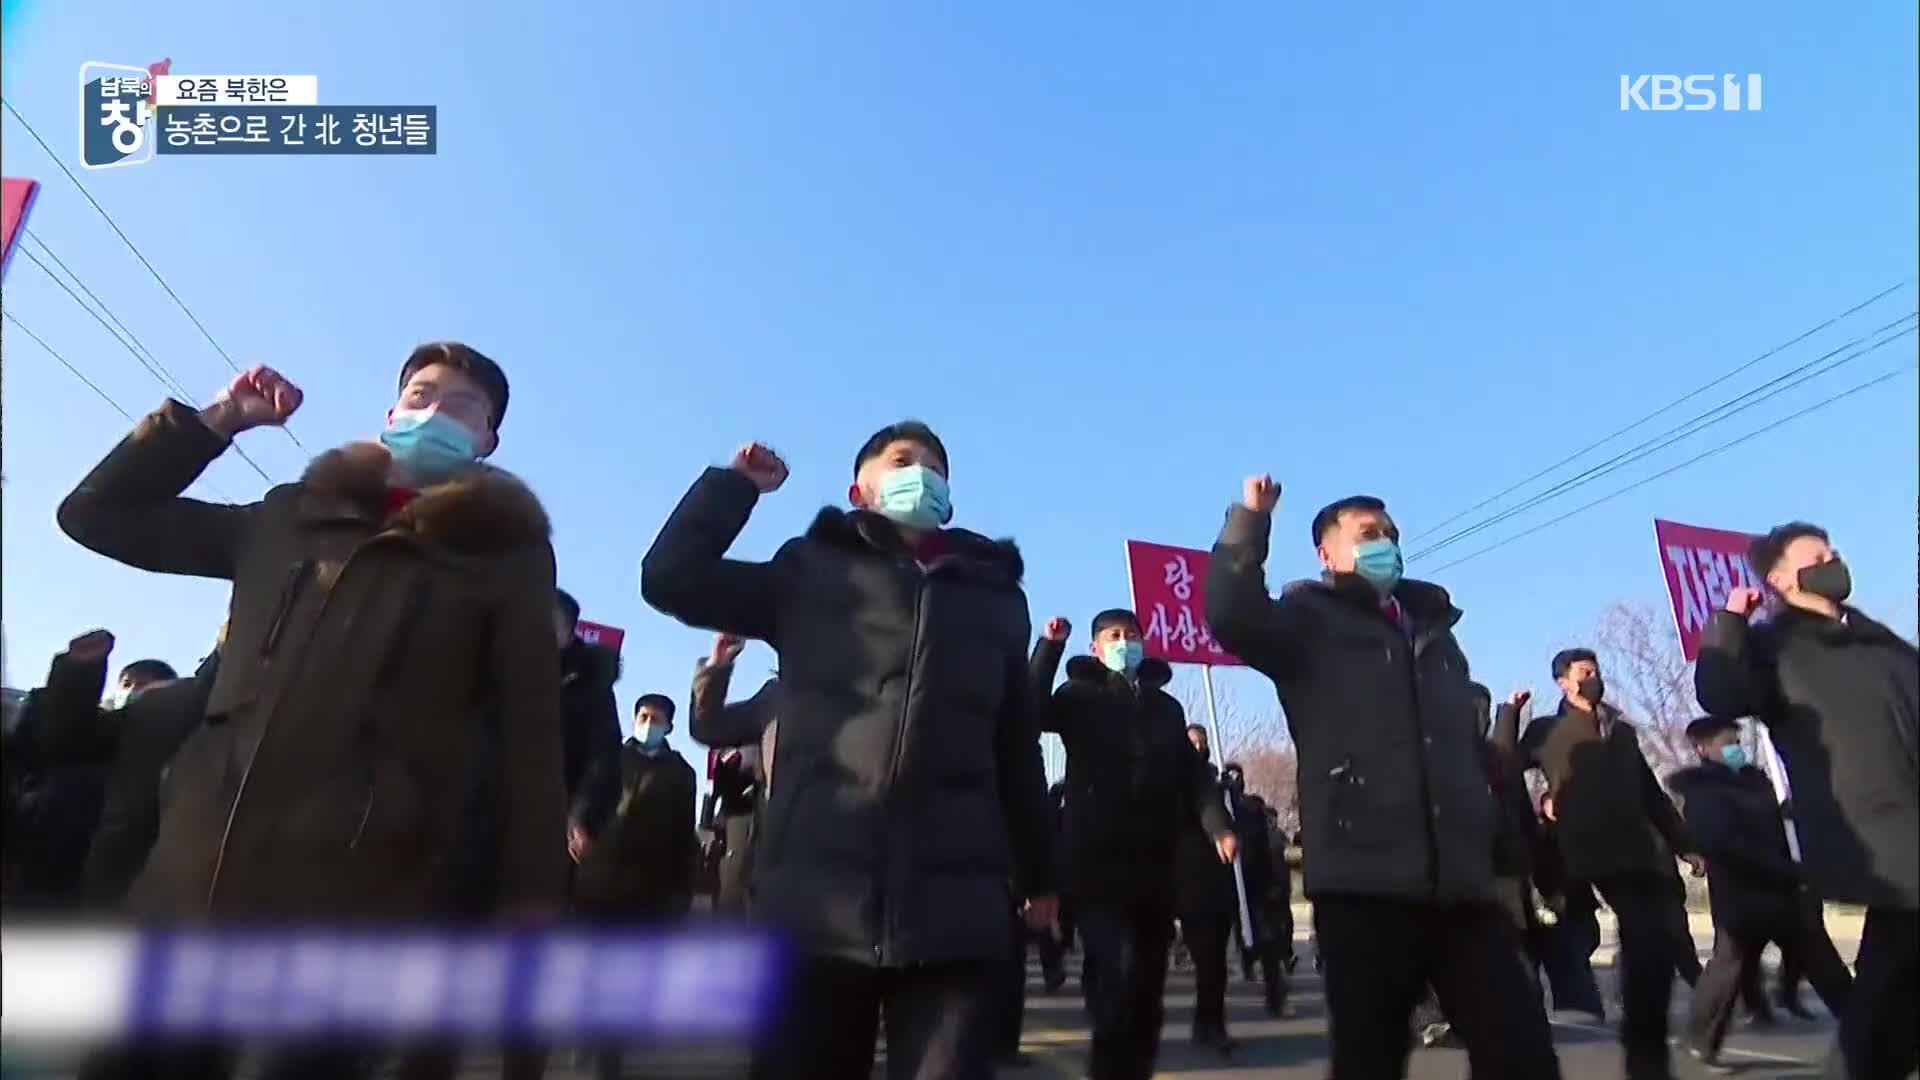 [요즘 북한은] 농촌 향하는 北 도시 청년들…이유는? 외